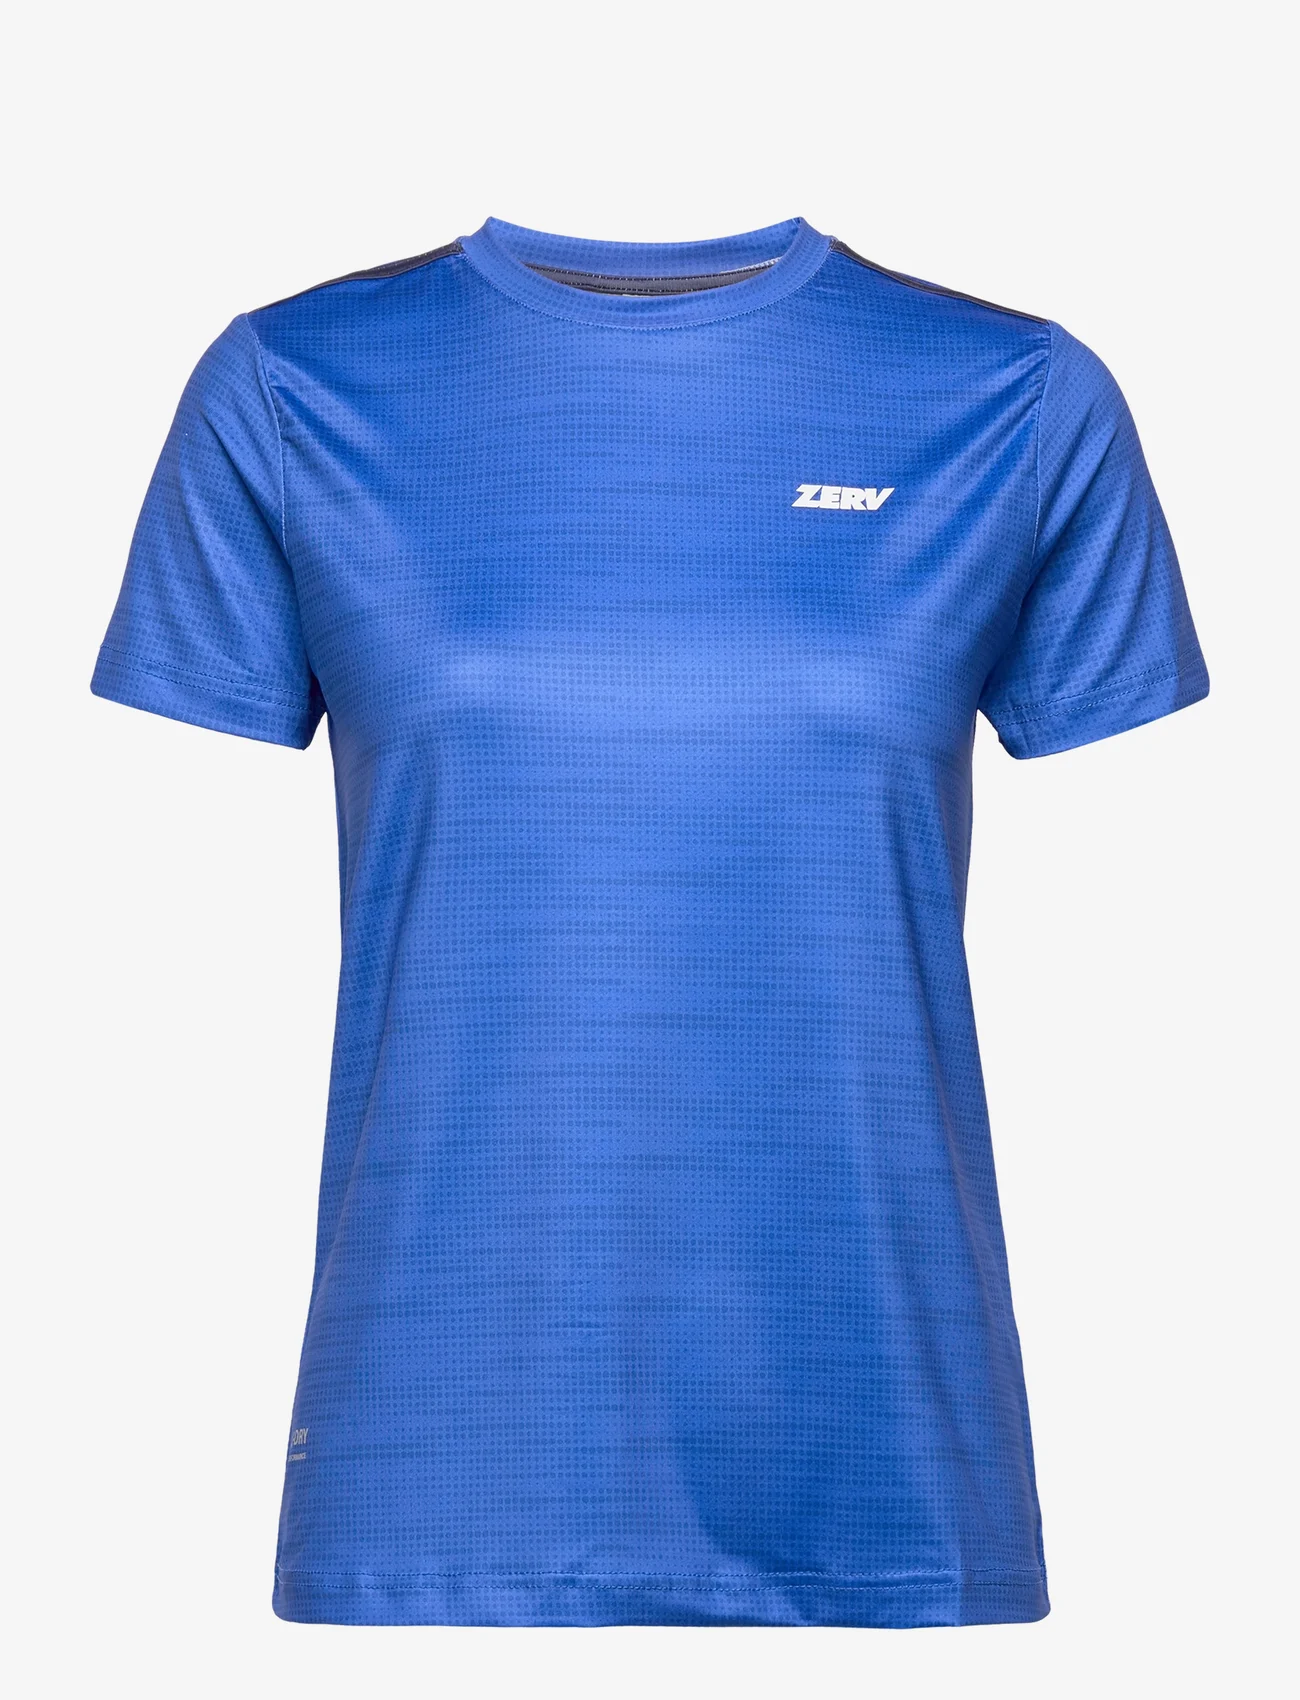 Zerv - ZERV Sydney T-Shirt Women's - t-shirts - blue - 0